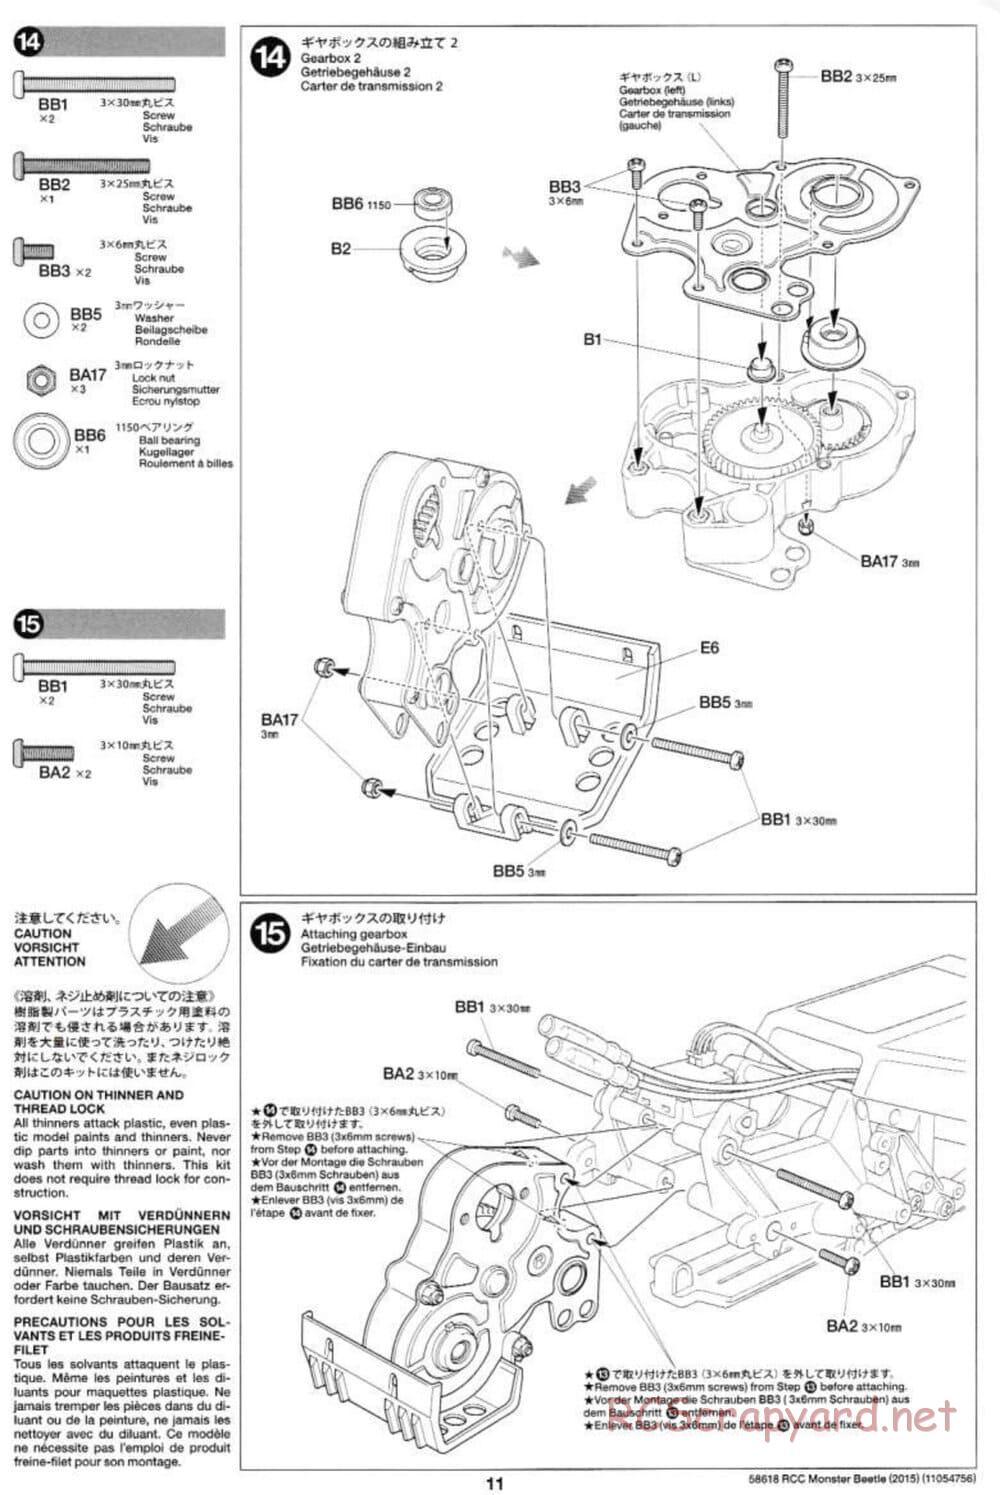 Tamiya - Monster Beetle 2015 - ORV Chassis - Manual - Page 11